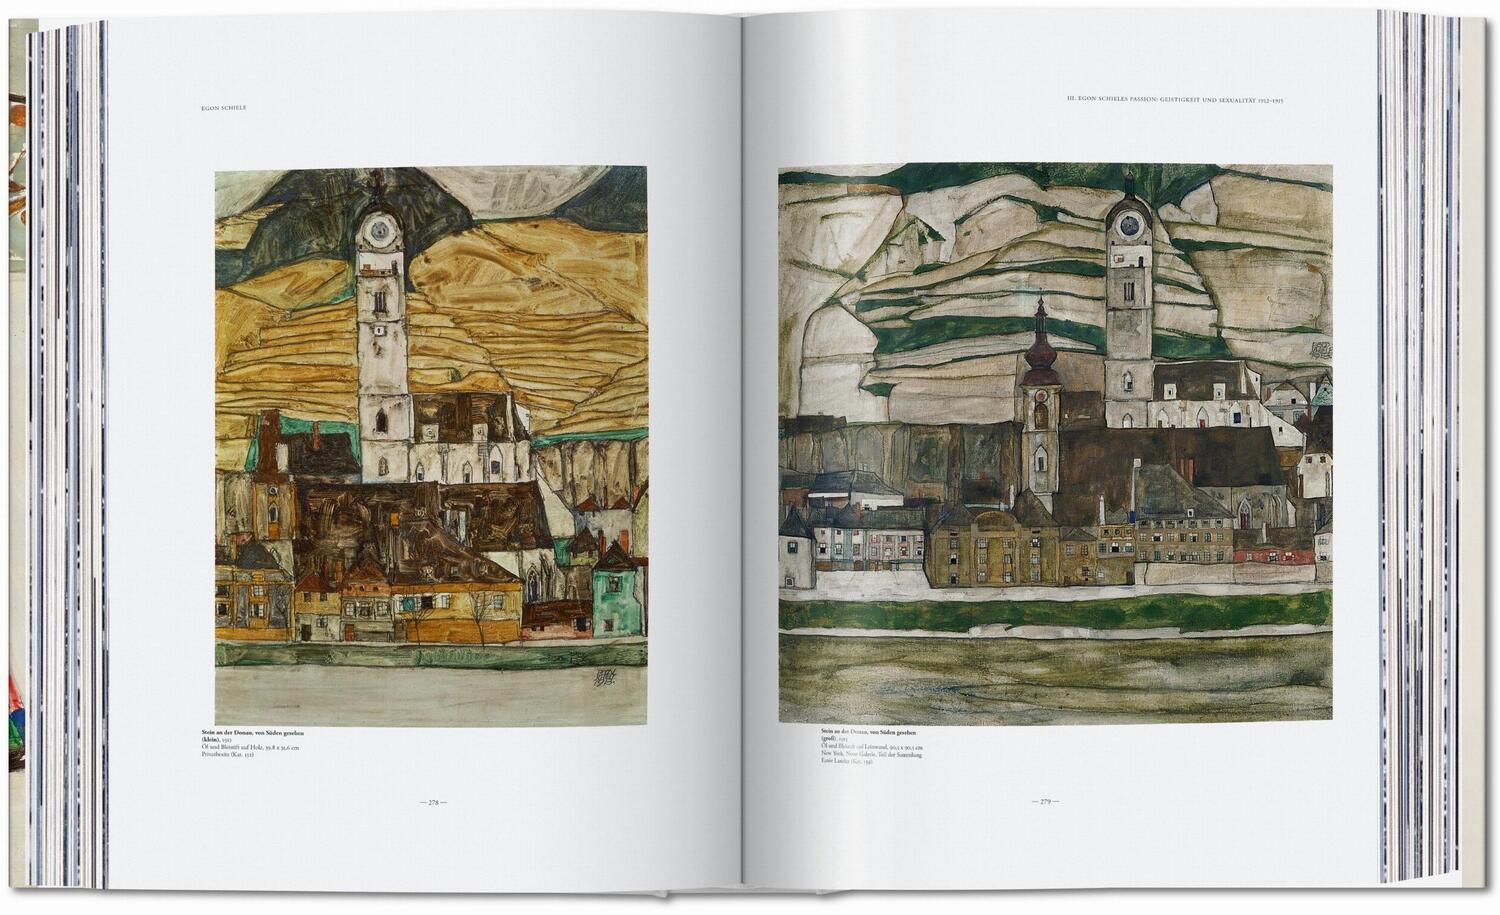 Bild: 9783836581813 | Egon Schiele. Sämtliche Gemälde 1909-1918 | Tobias G. Natter | Buch